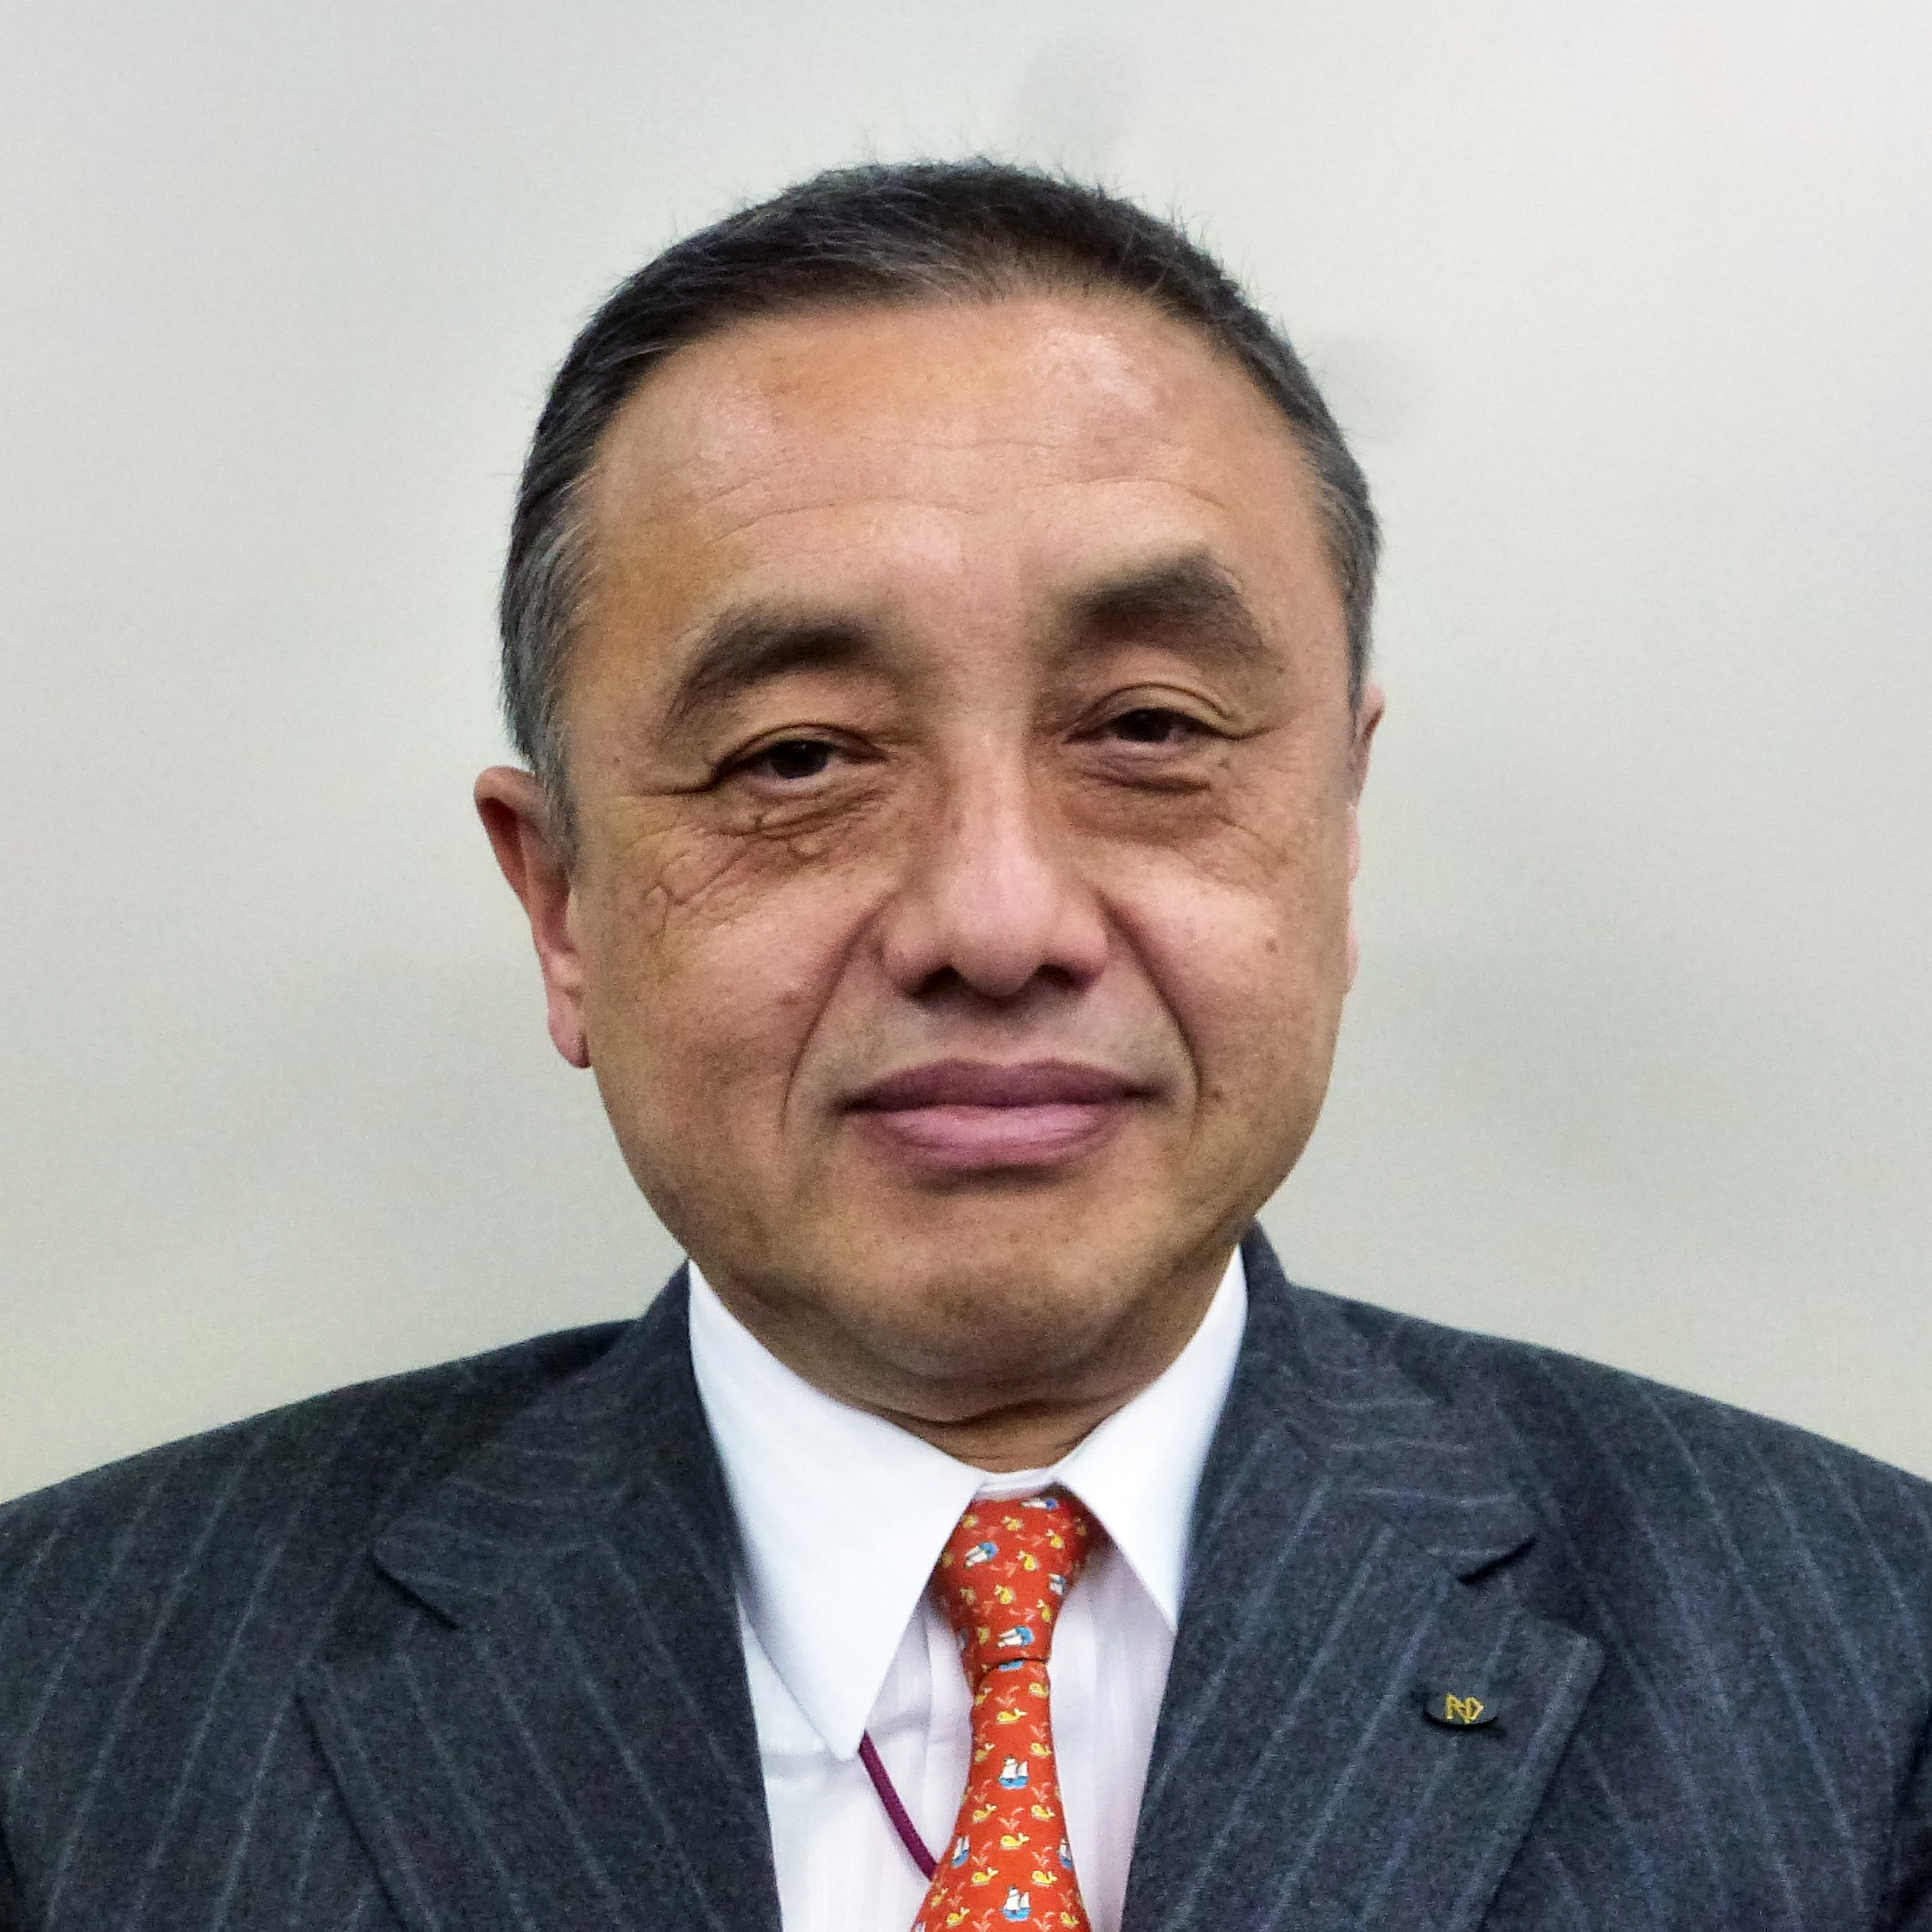 【2020年年頭所感】日本配線資材工業会「景気に左右されぬ体質を」松本年生 会長